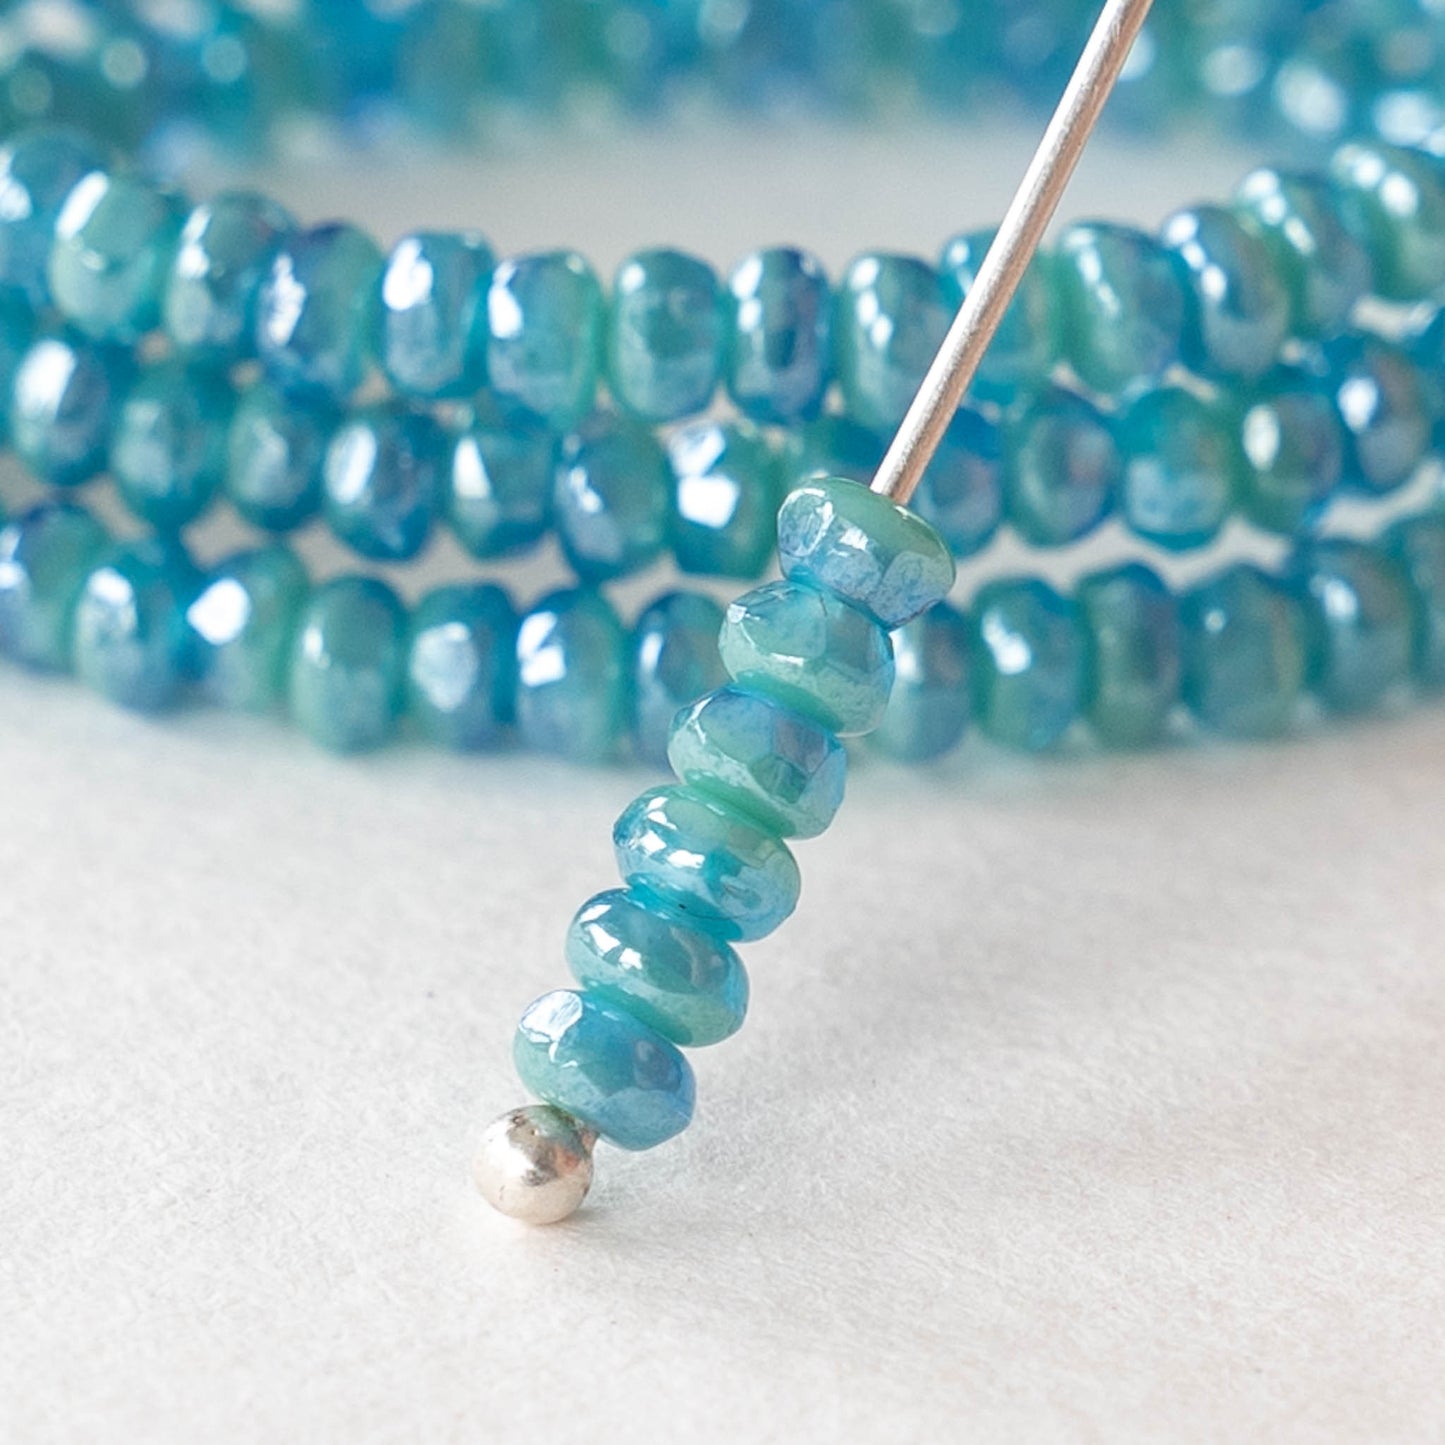 2x3mm Rondelle Beads - Light Blue Luster - 50 Beads